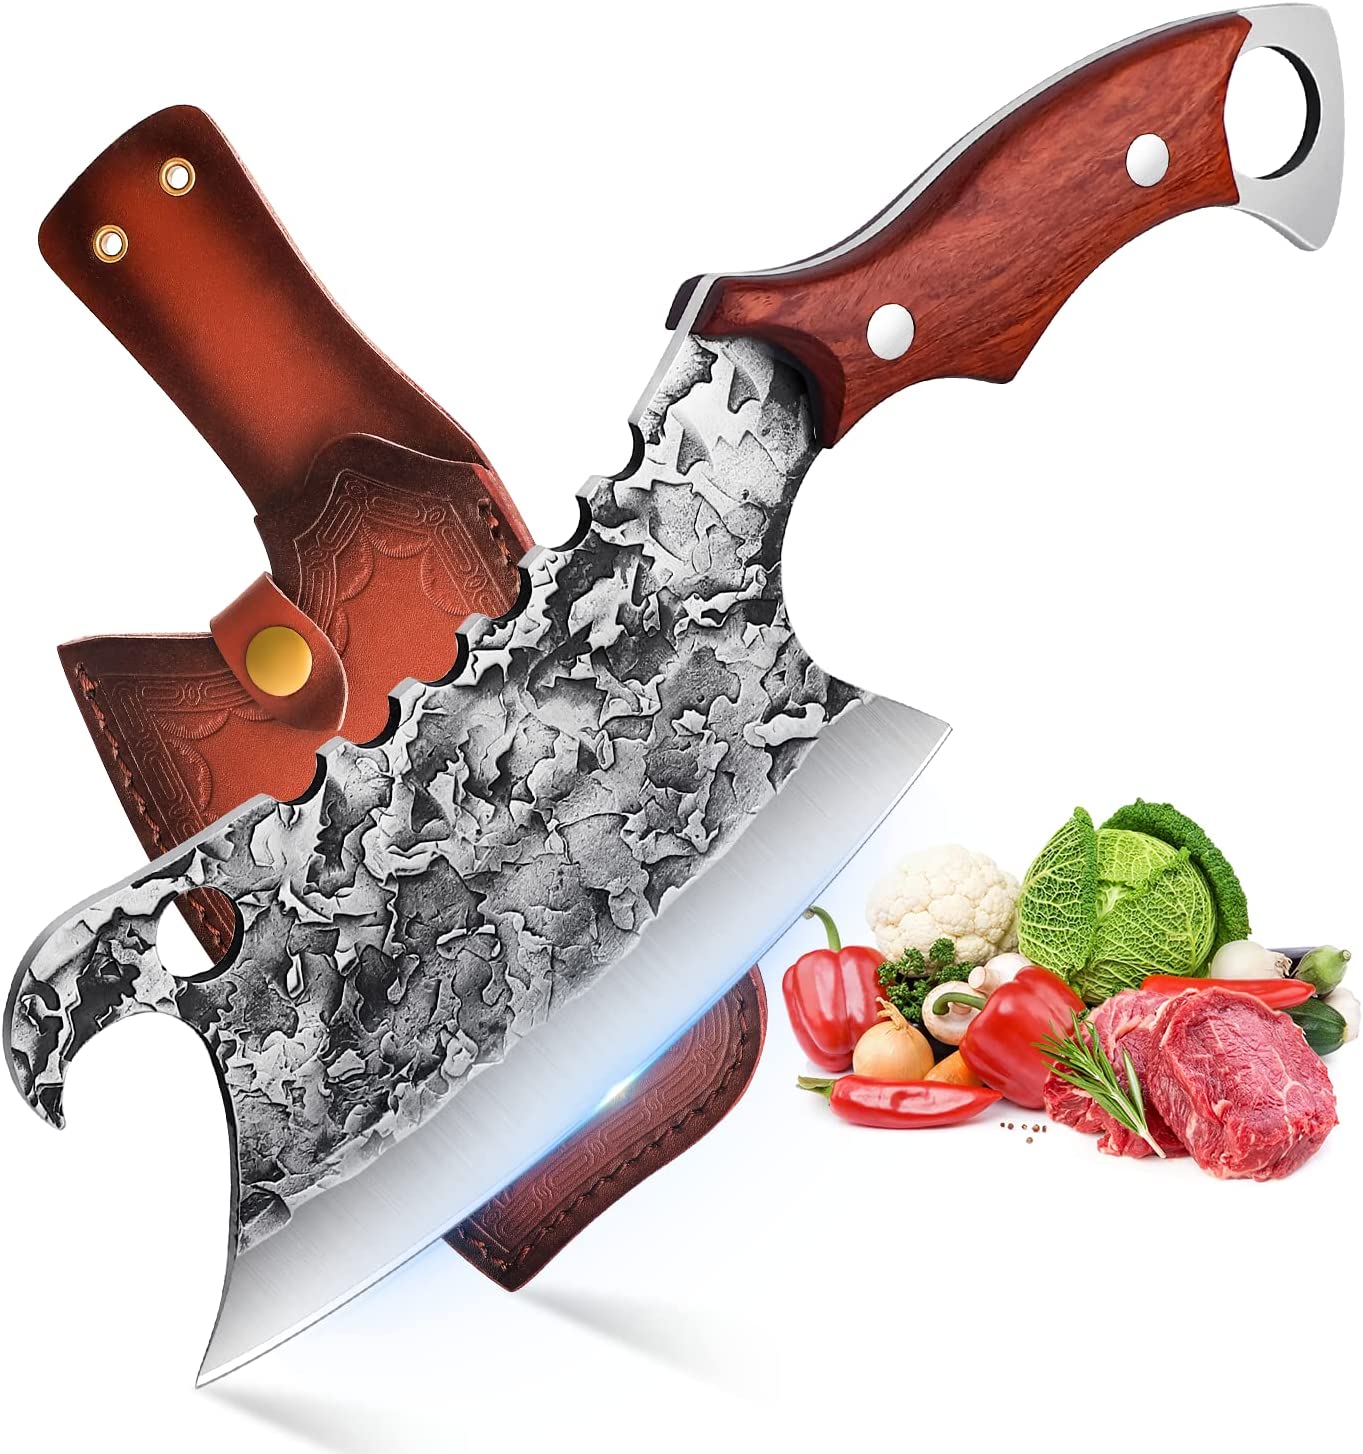 1x Sekáček, profesionální řeznický nůž s dřevěnou rukojetí, ručně kovaný